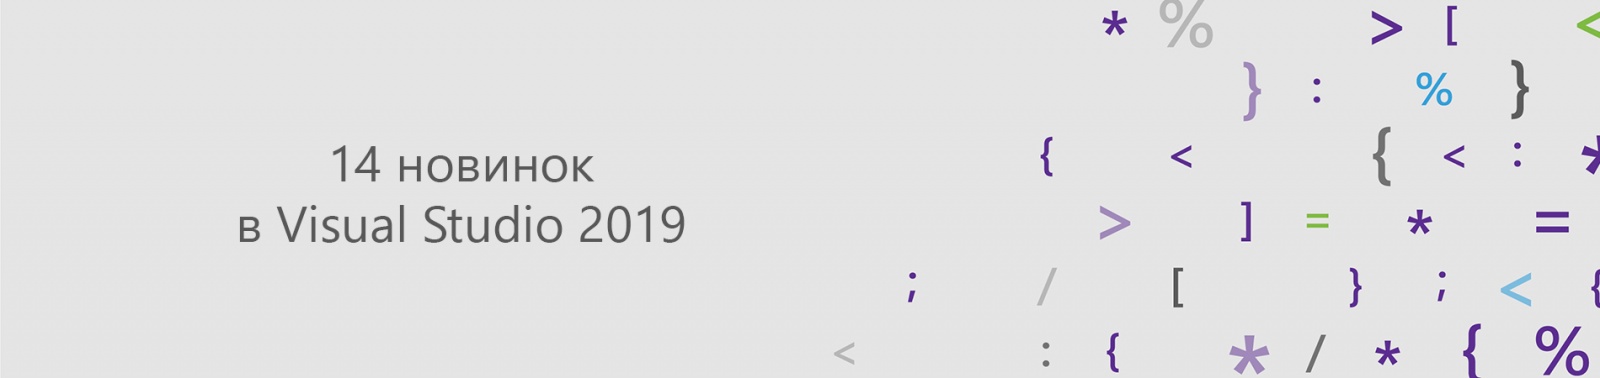 14 новинок в Visual Studio 2019 - 1